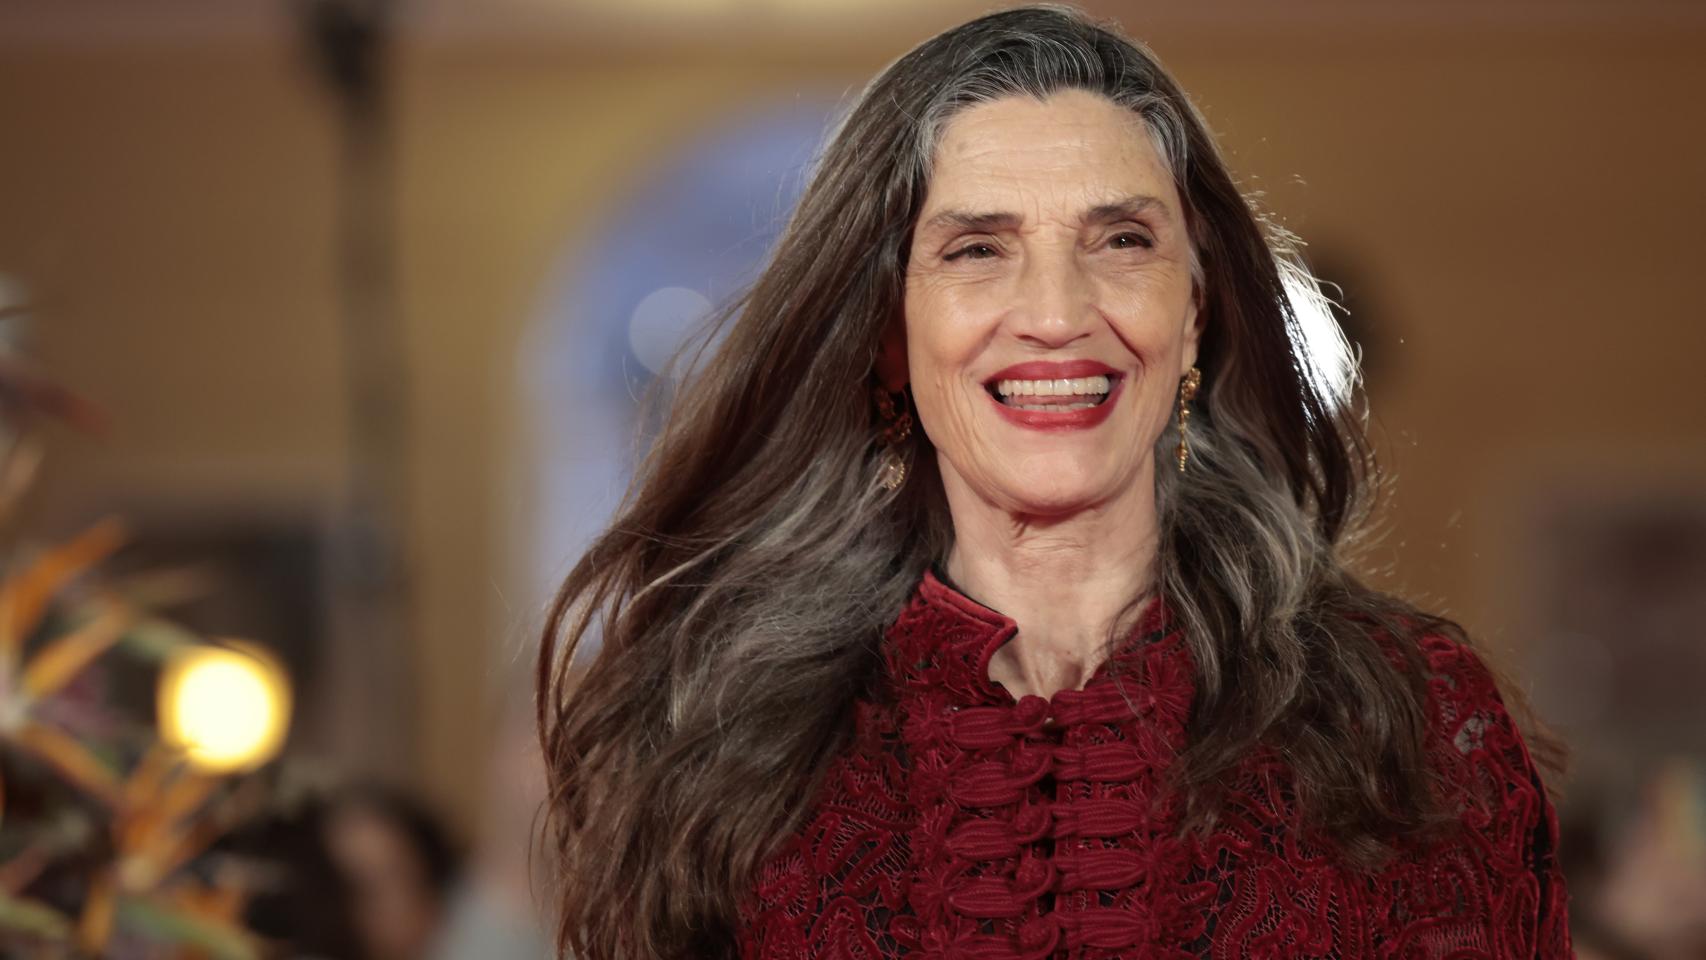 Ángela Molina es nombrada la nueva imagen de Zara a sus 67 años